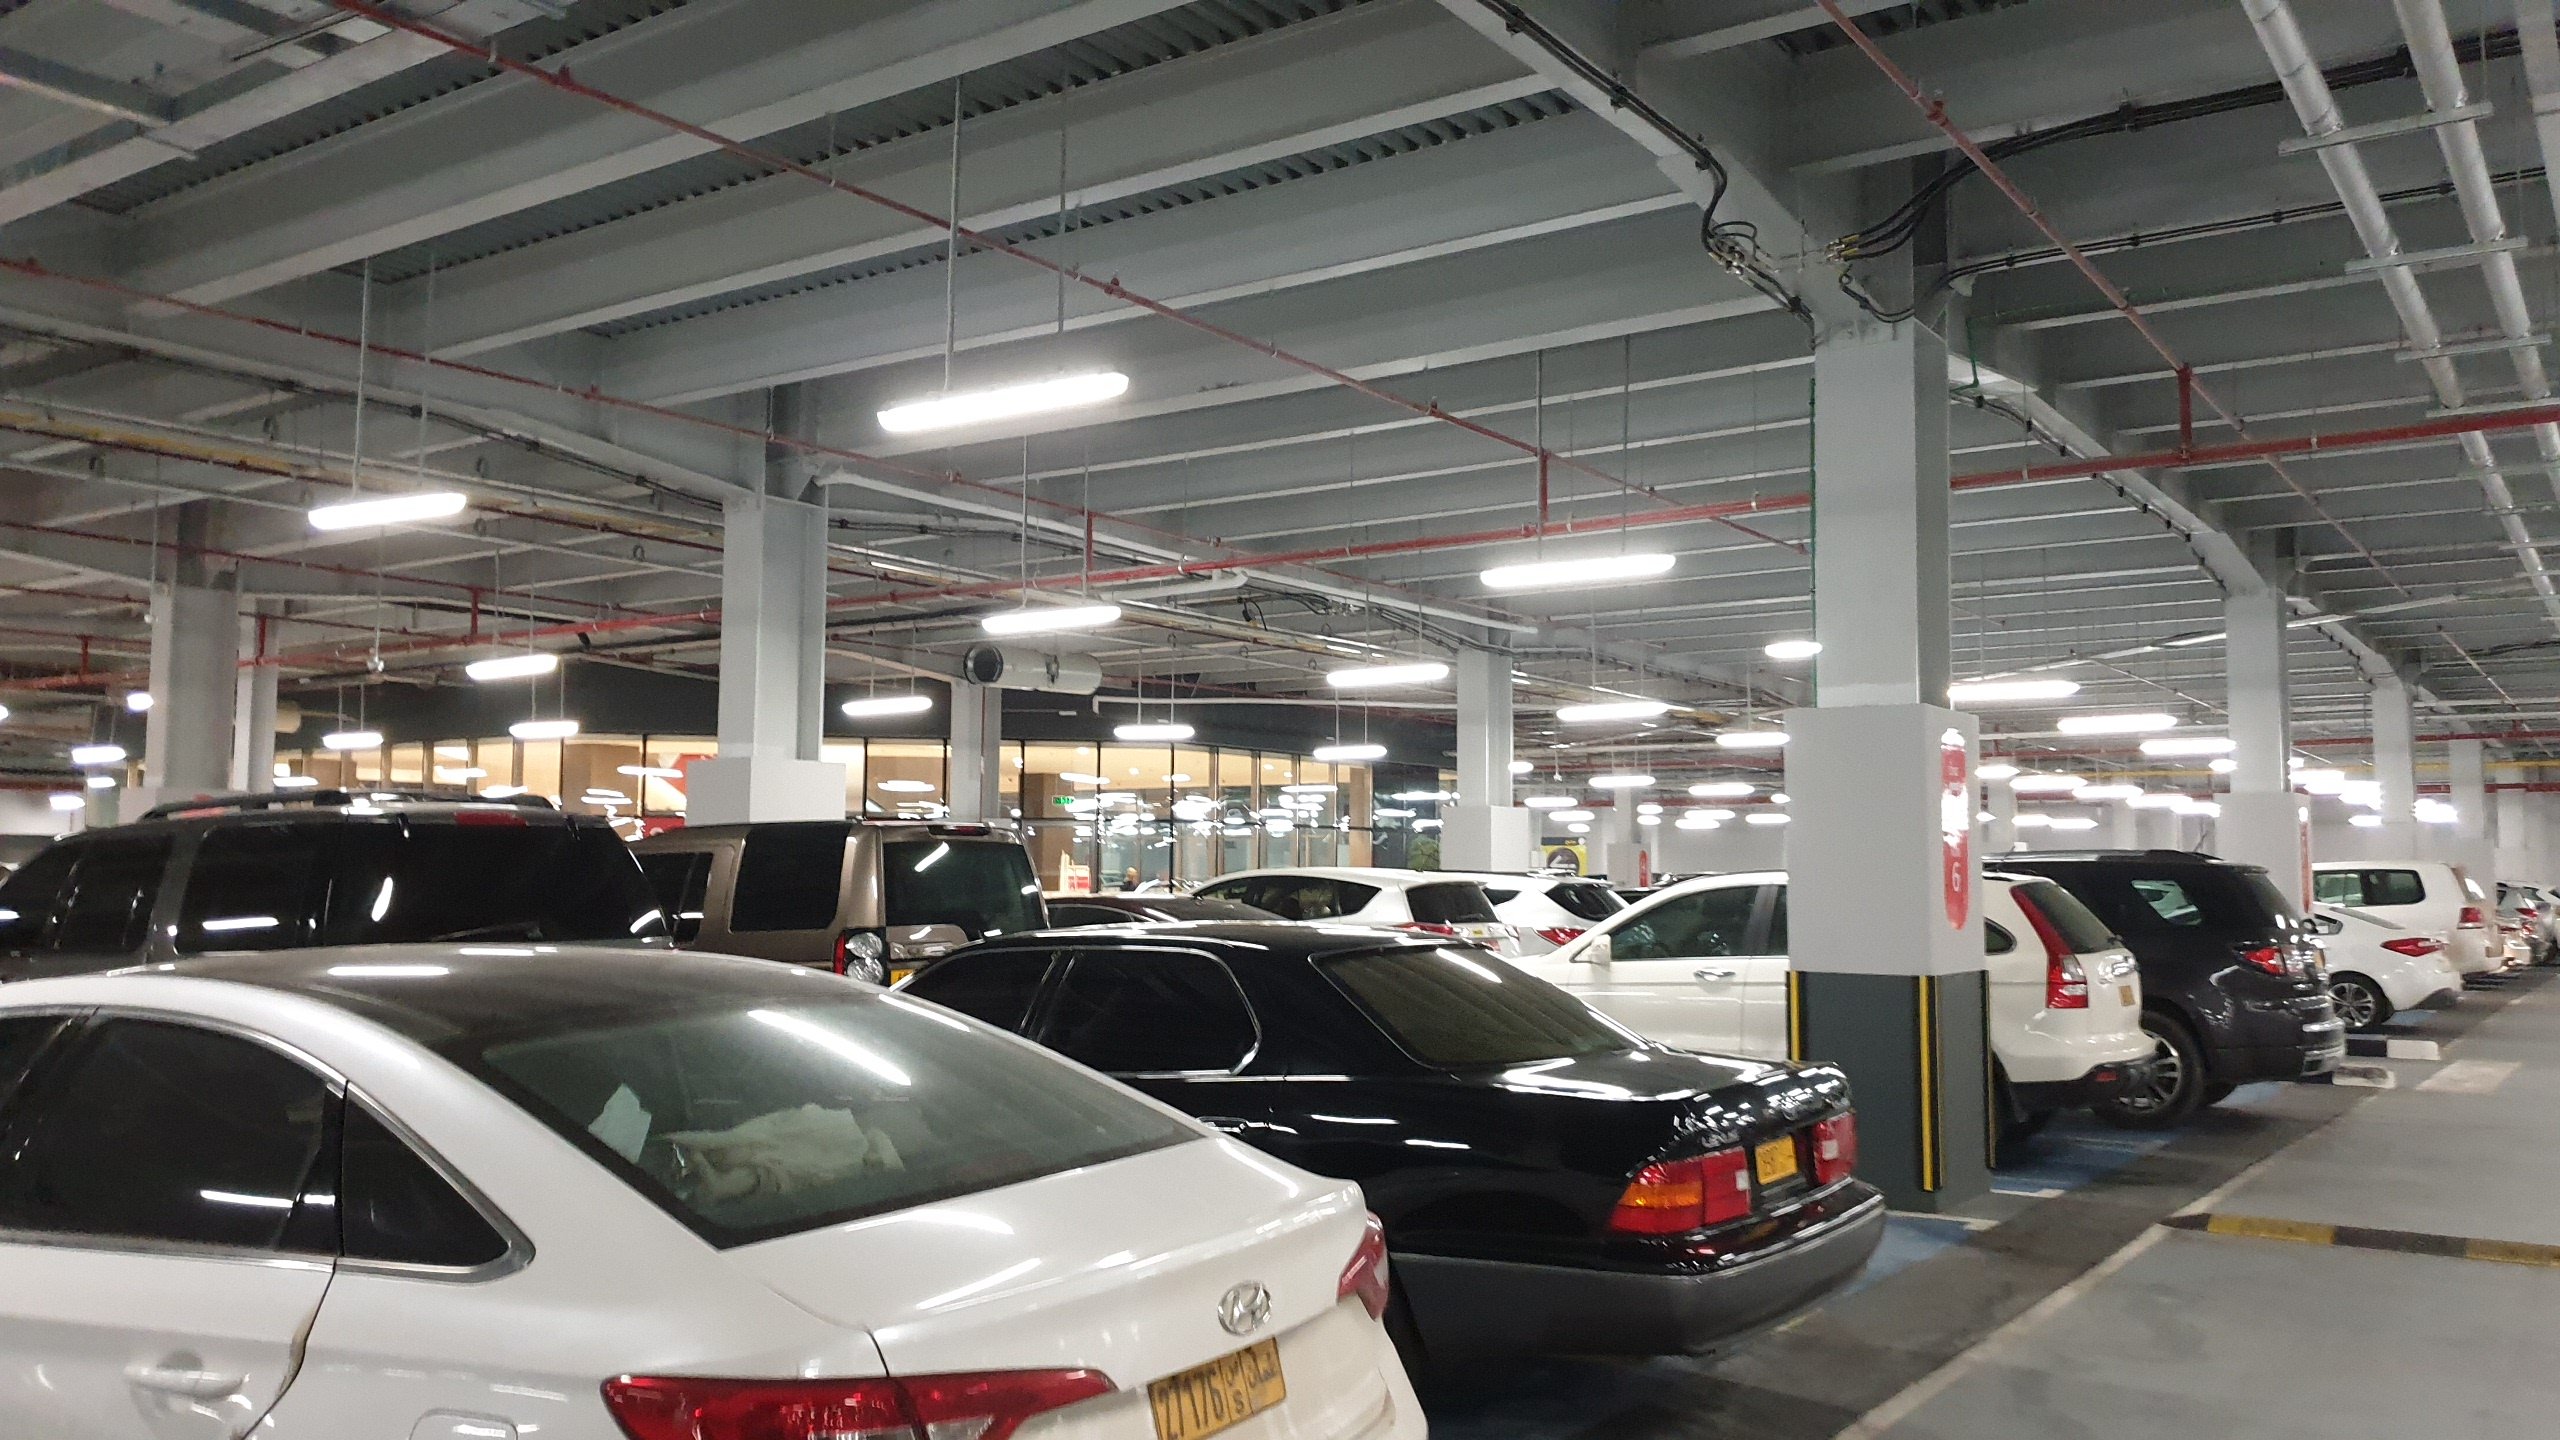 Oasis mall salalah basement car parking